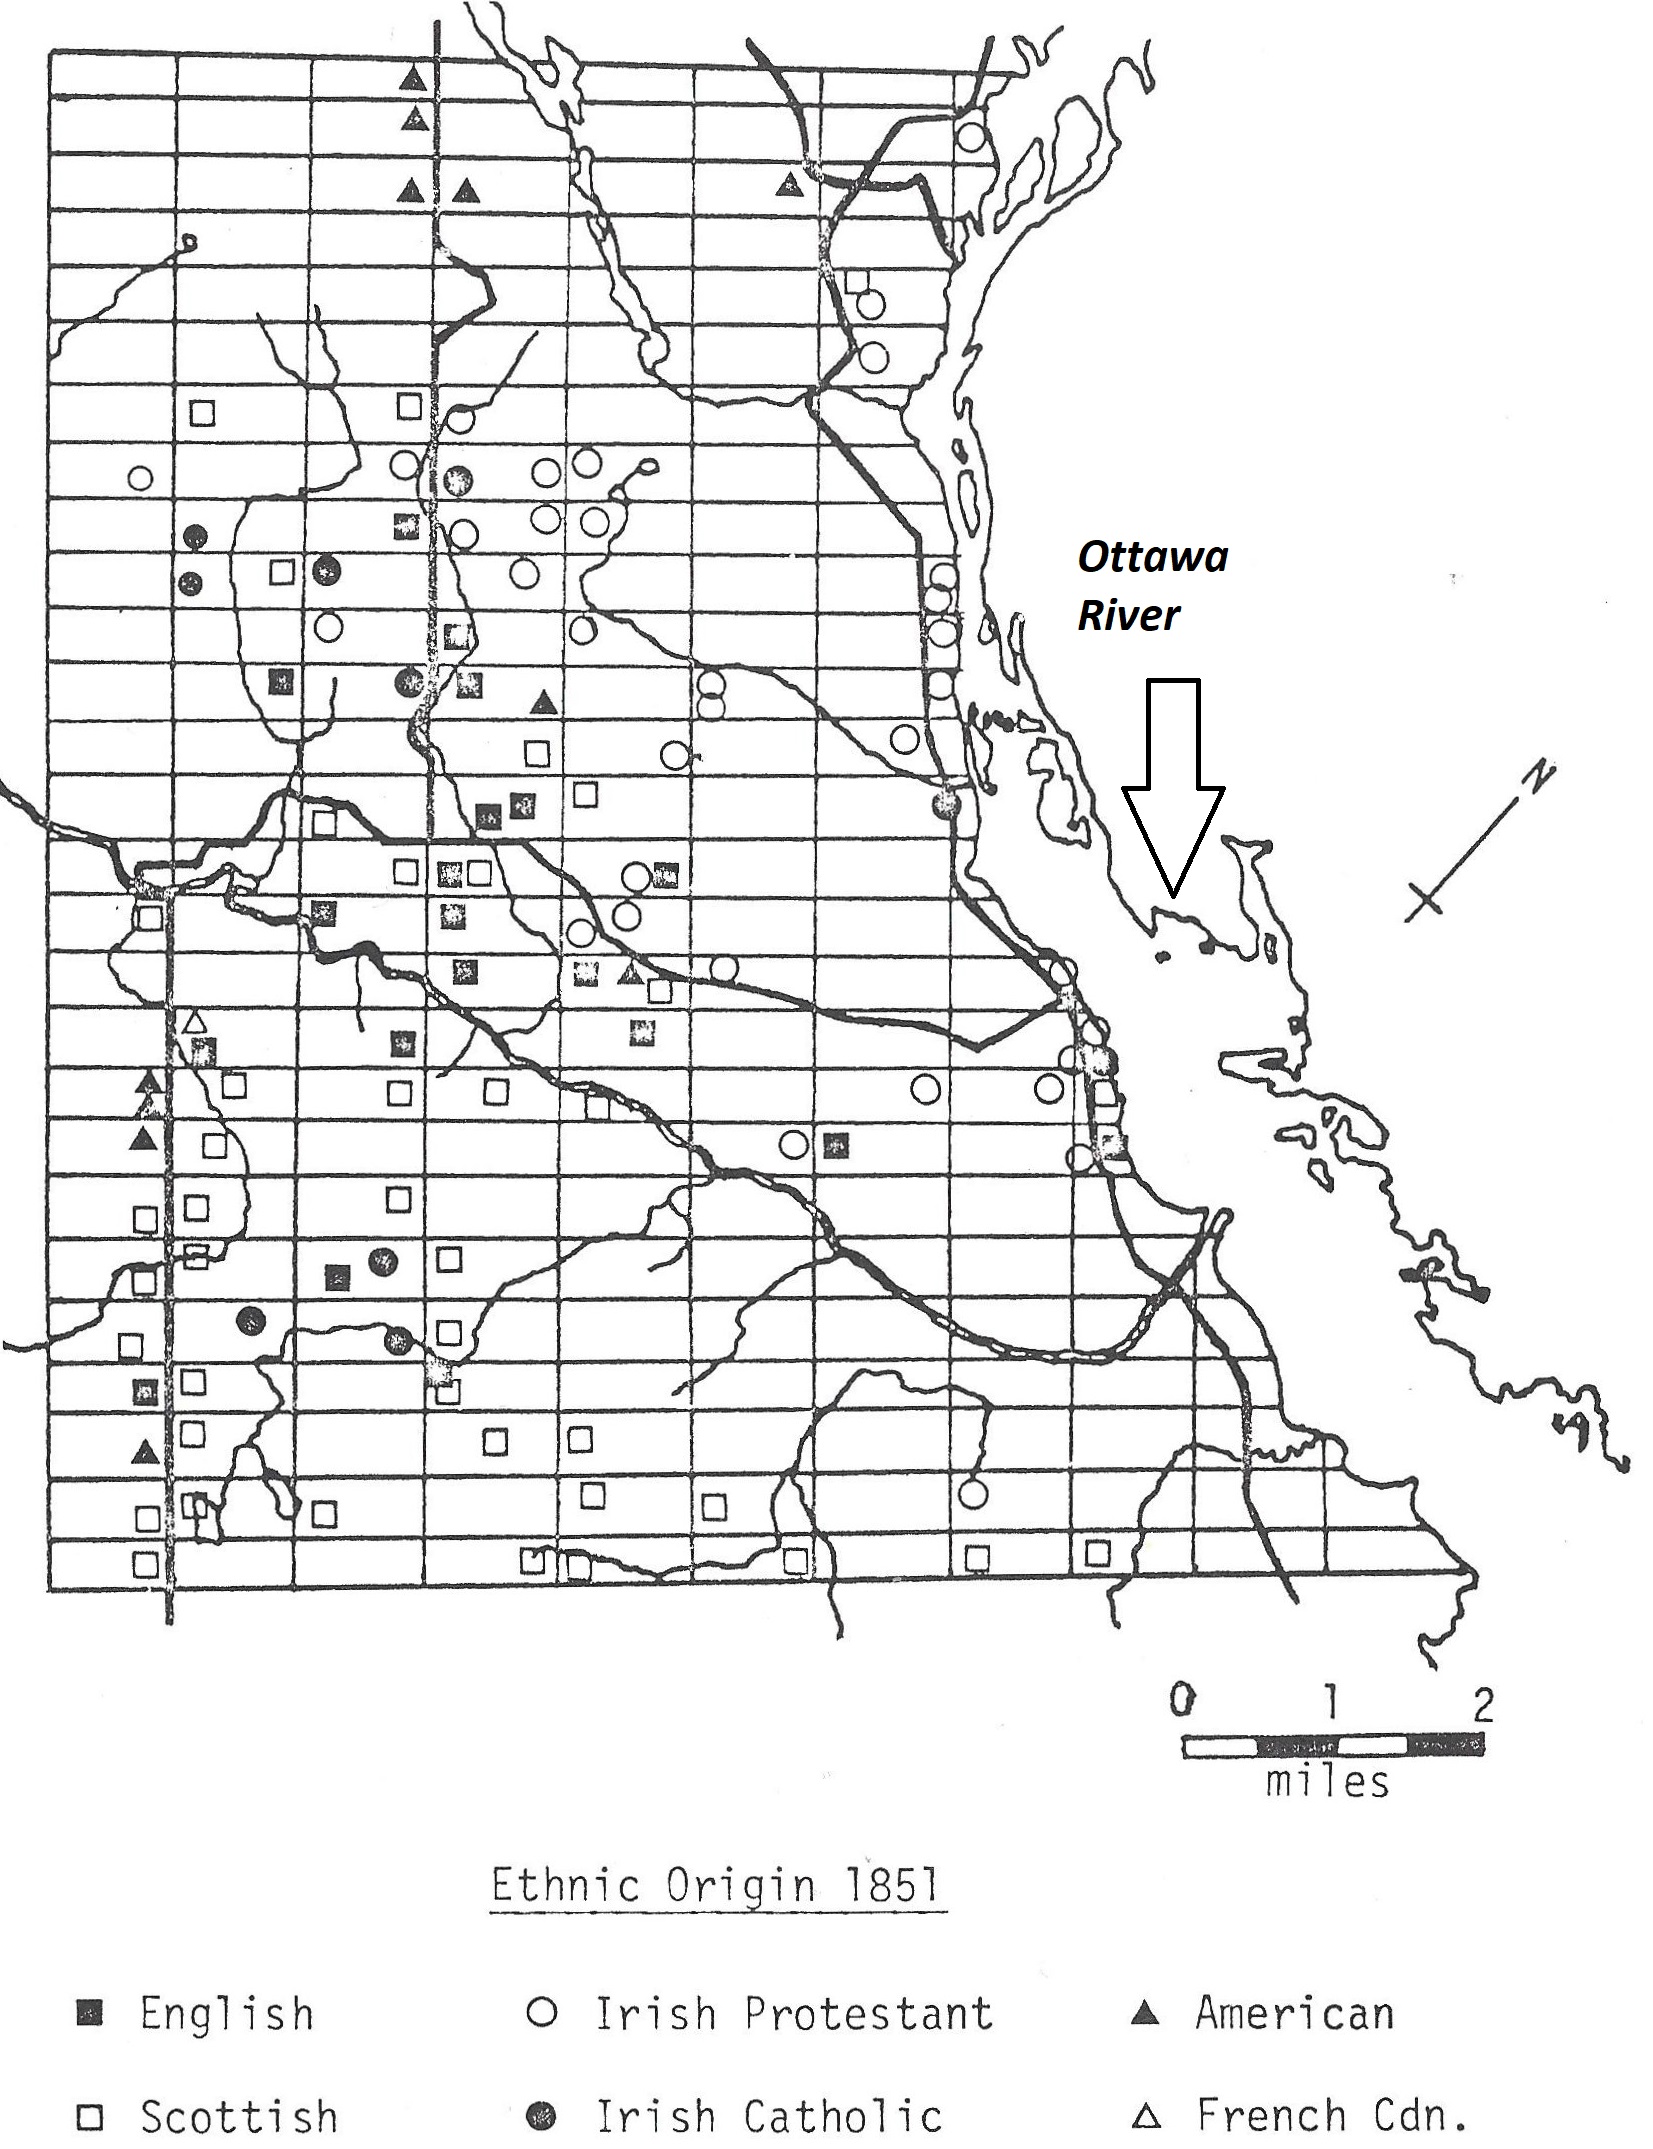 Ethnic Origins in 1851, Horton Township